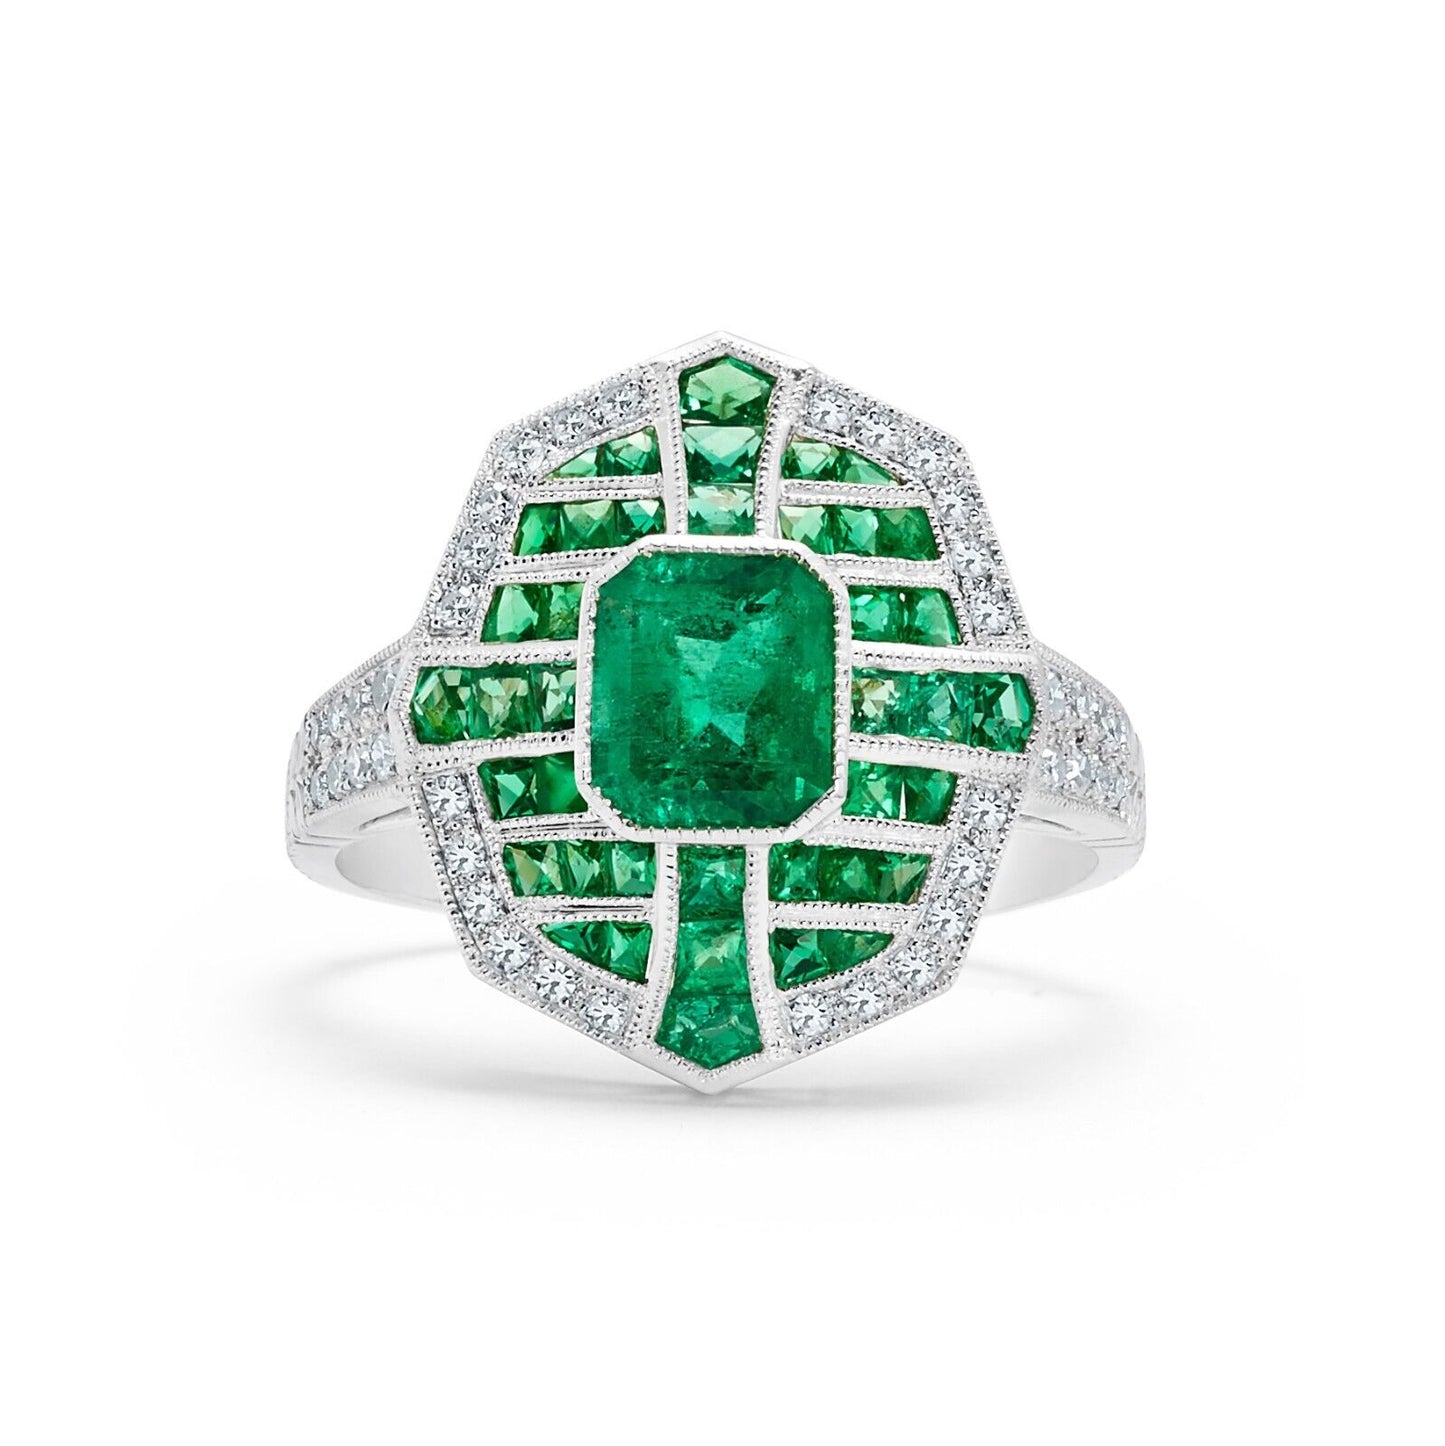 Art Deco Diamond And Emerald Gemstone Platinum Ring Antique Inspired